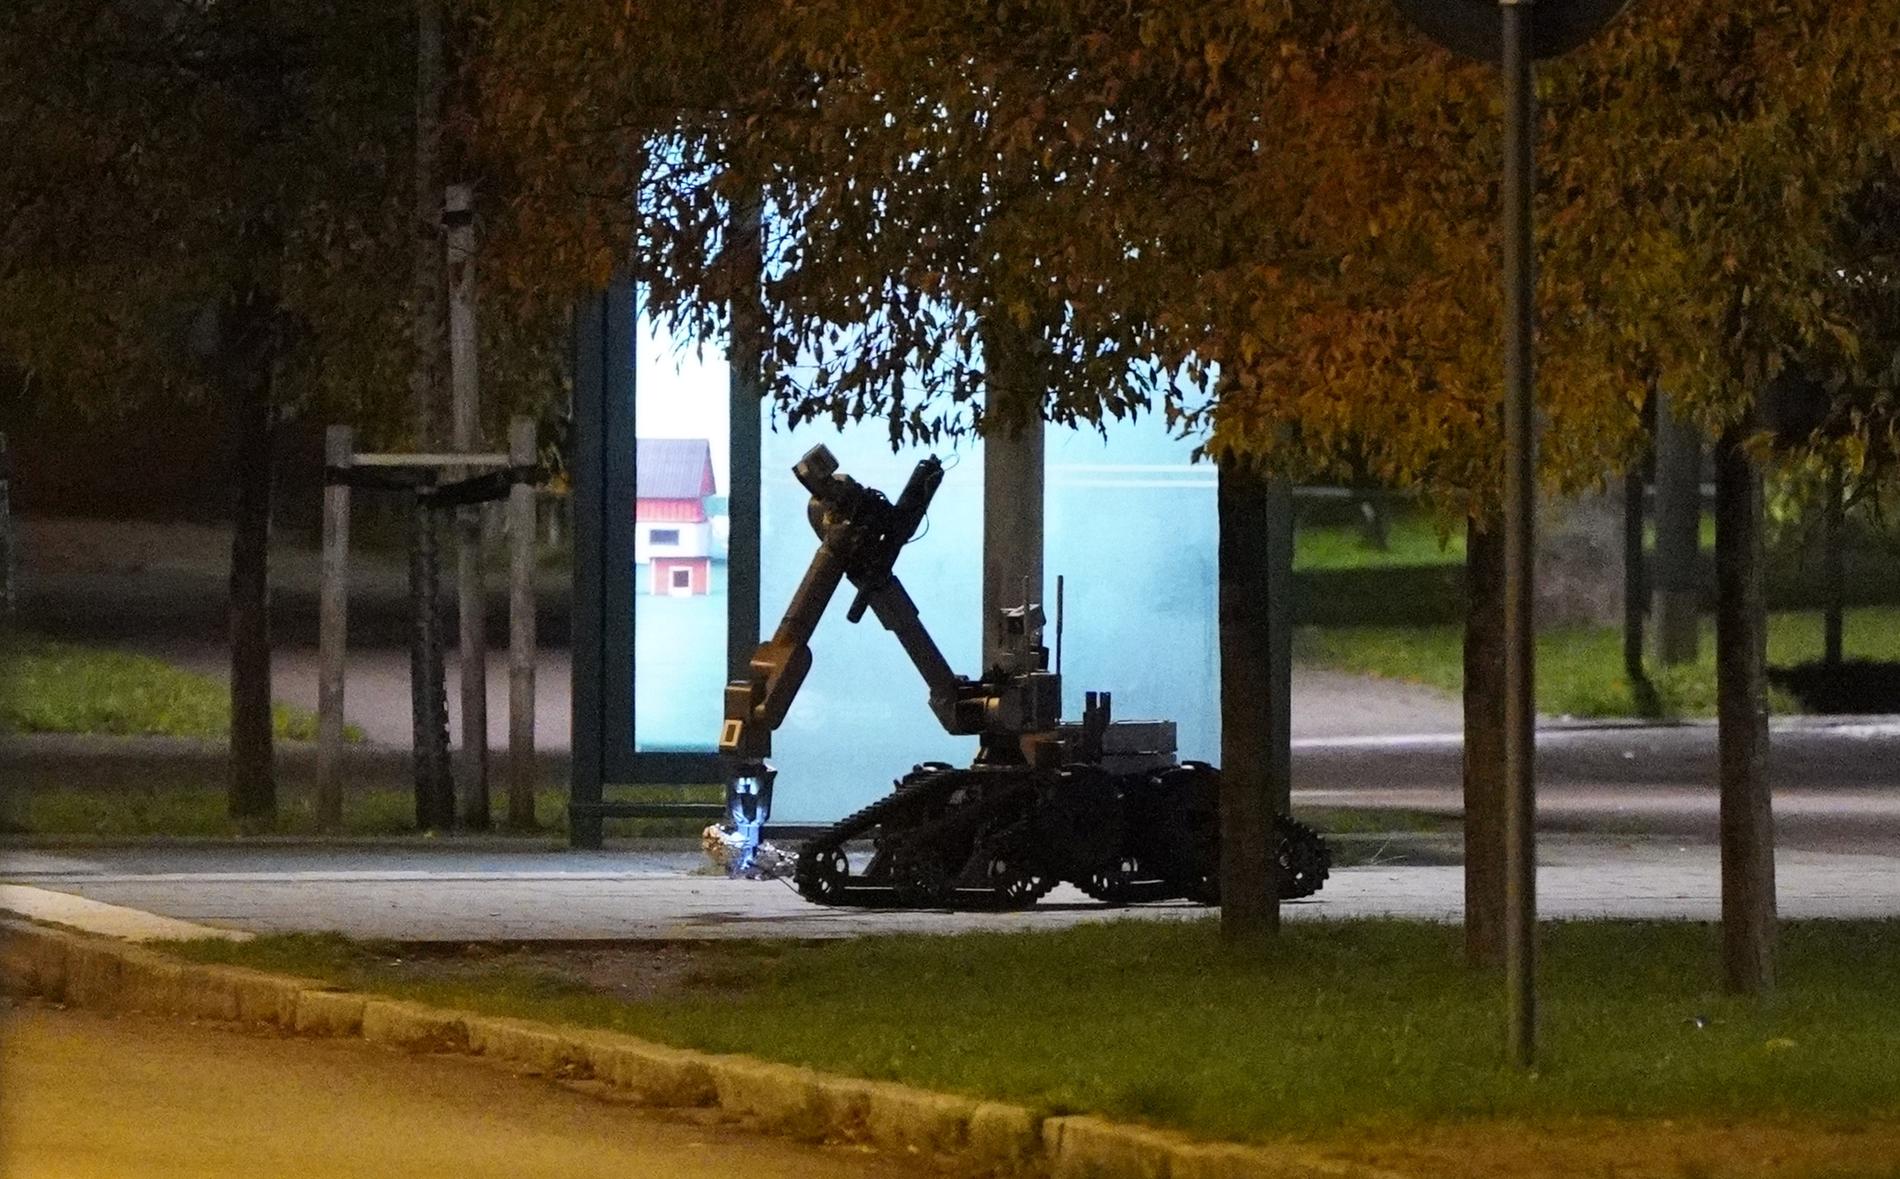 NBS bombrobot kontrollerar föremålet som finns vid en busshållplats.